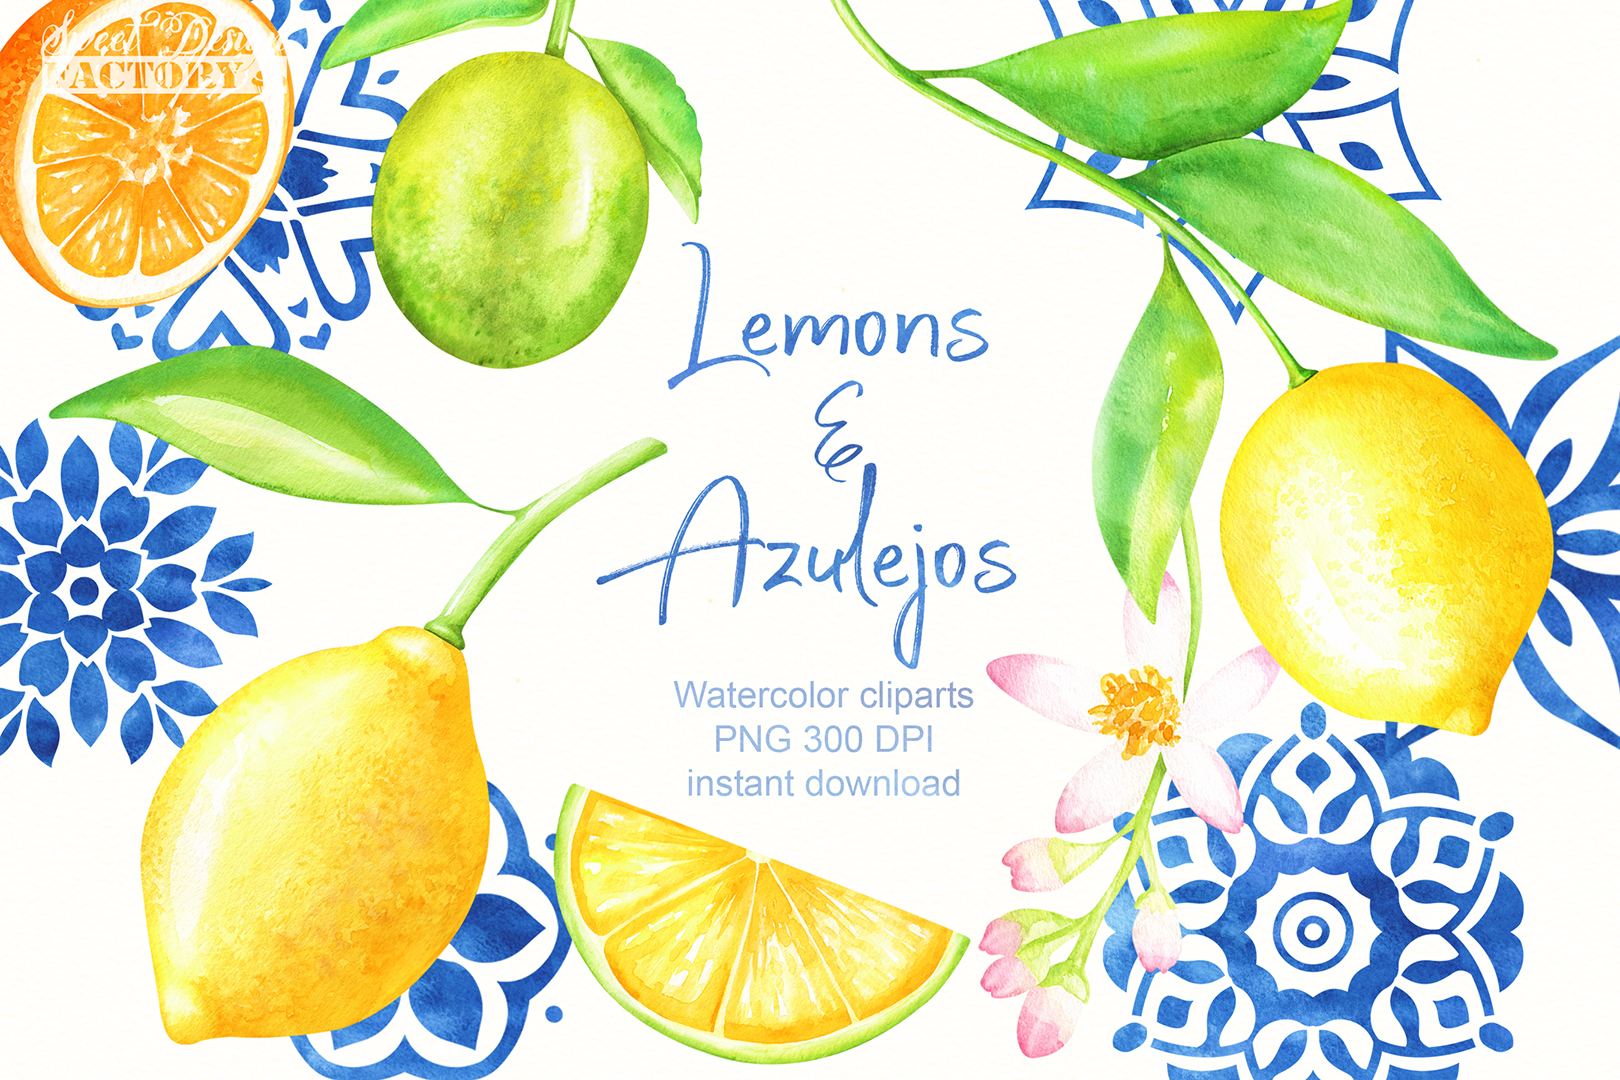 Watercolor lemons and.